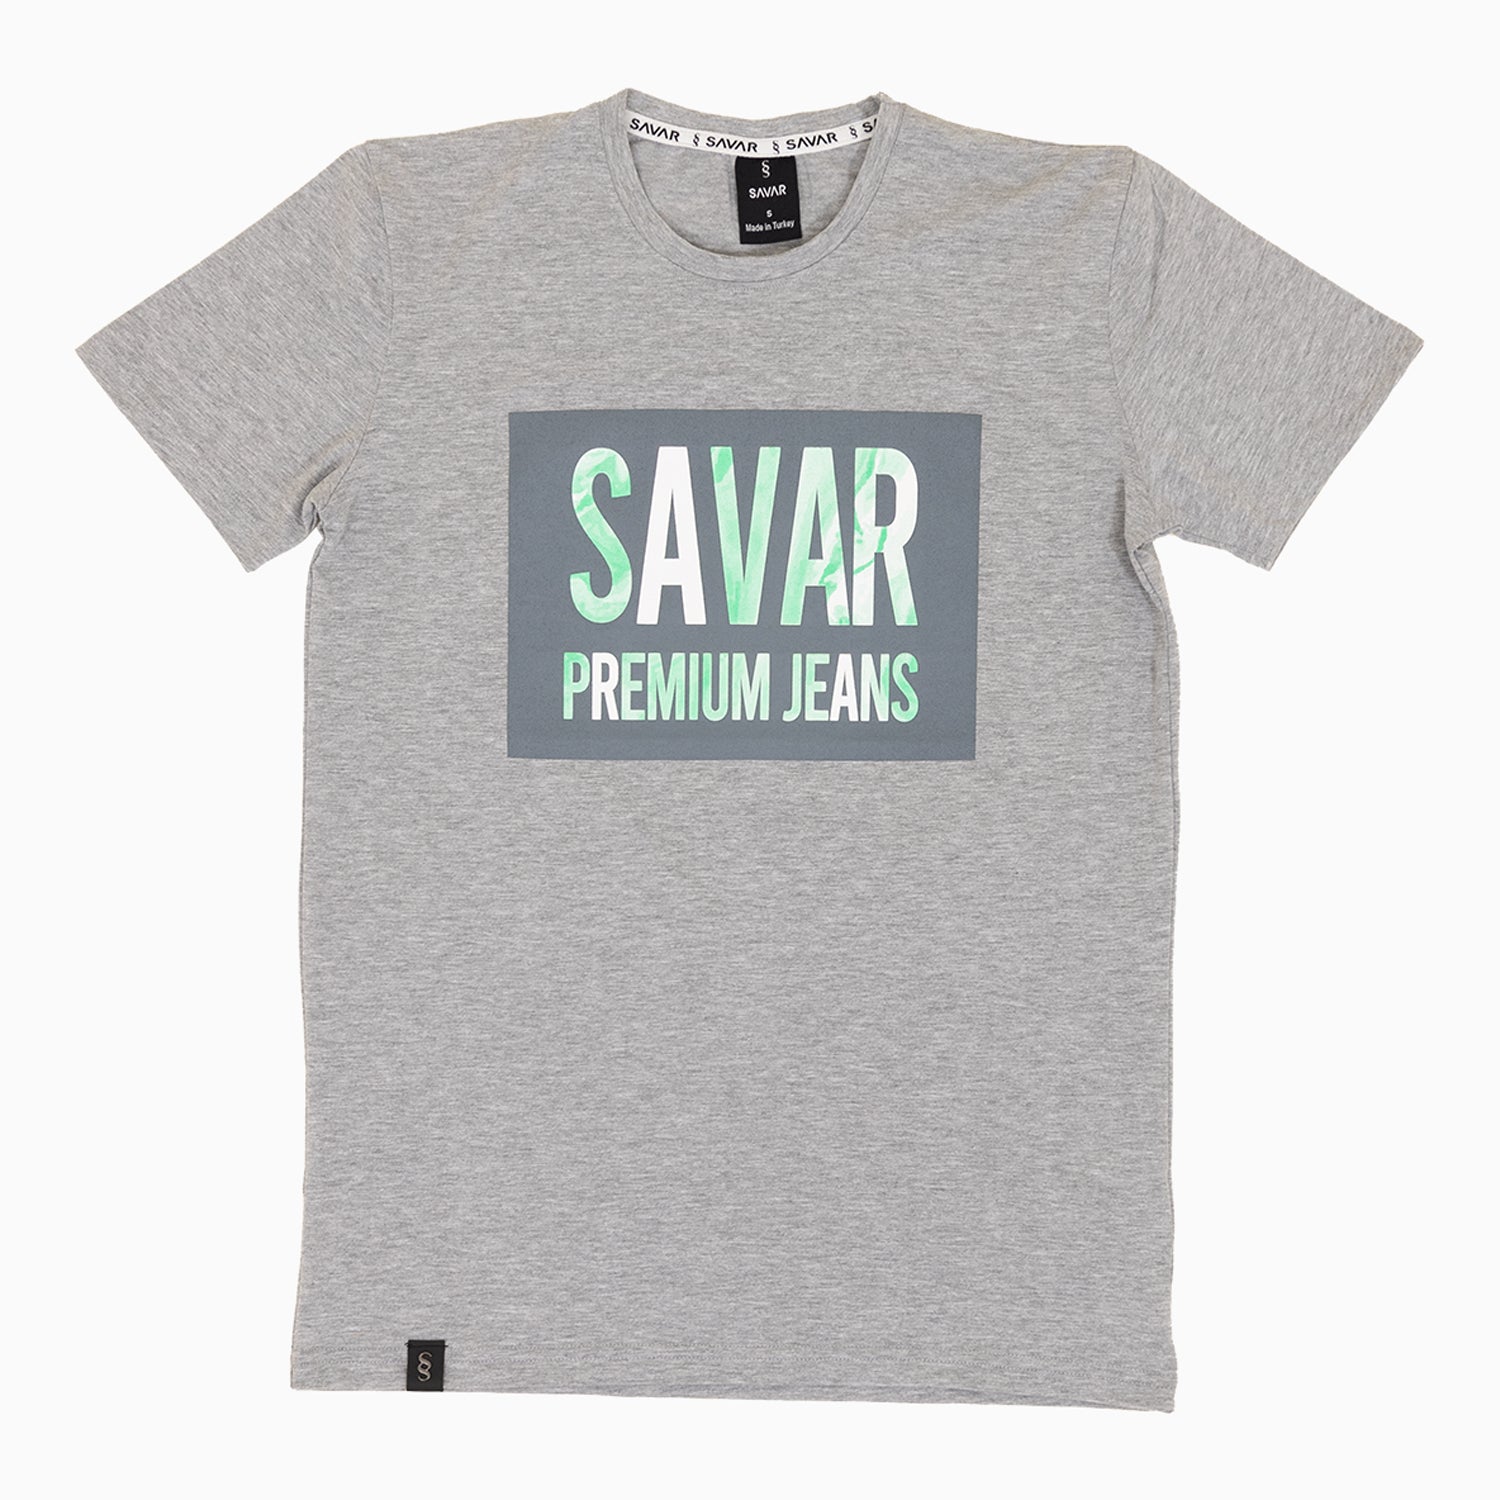 savar-mens-military-premium-printed-grey-t-shirt-st217-063